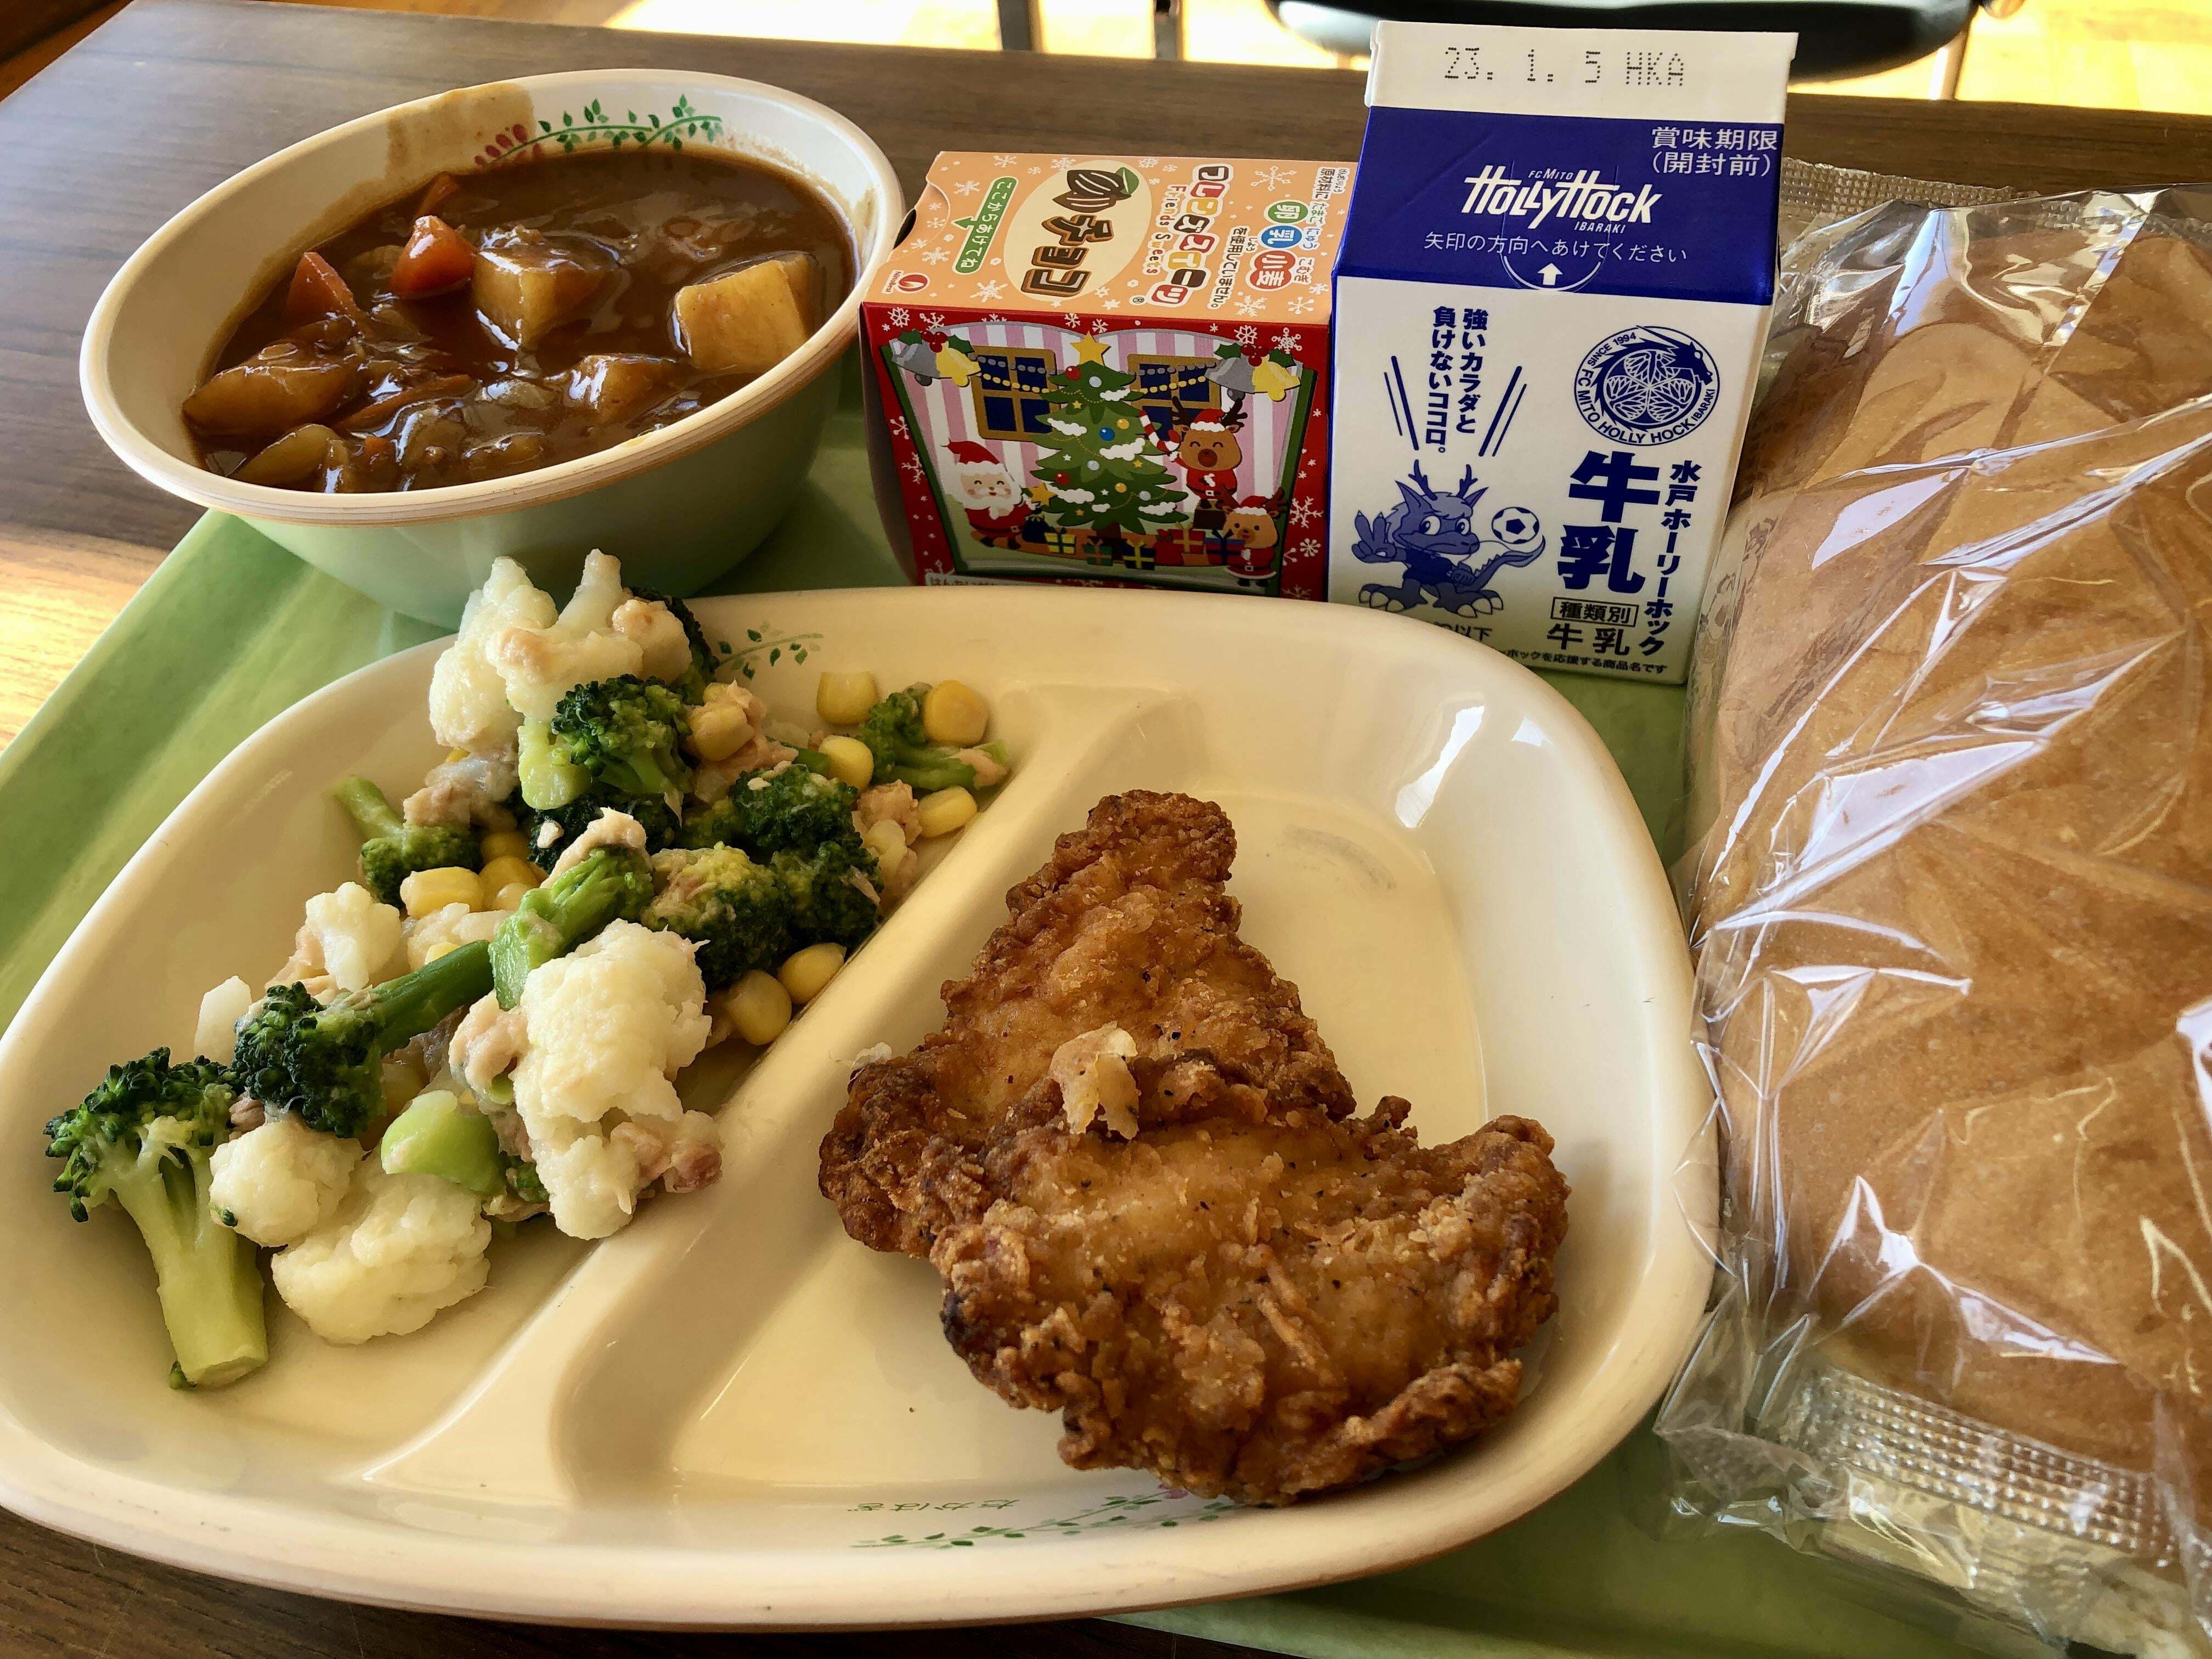 déjeuner scolaire au japon. l'édition de noël